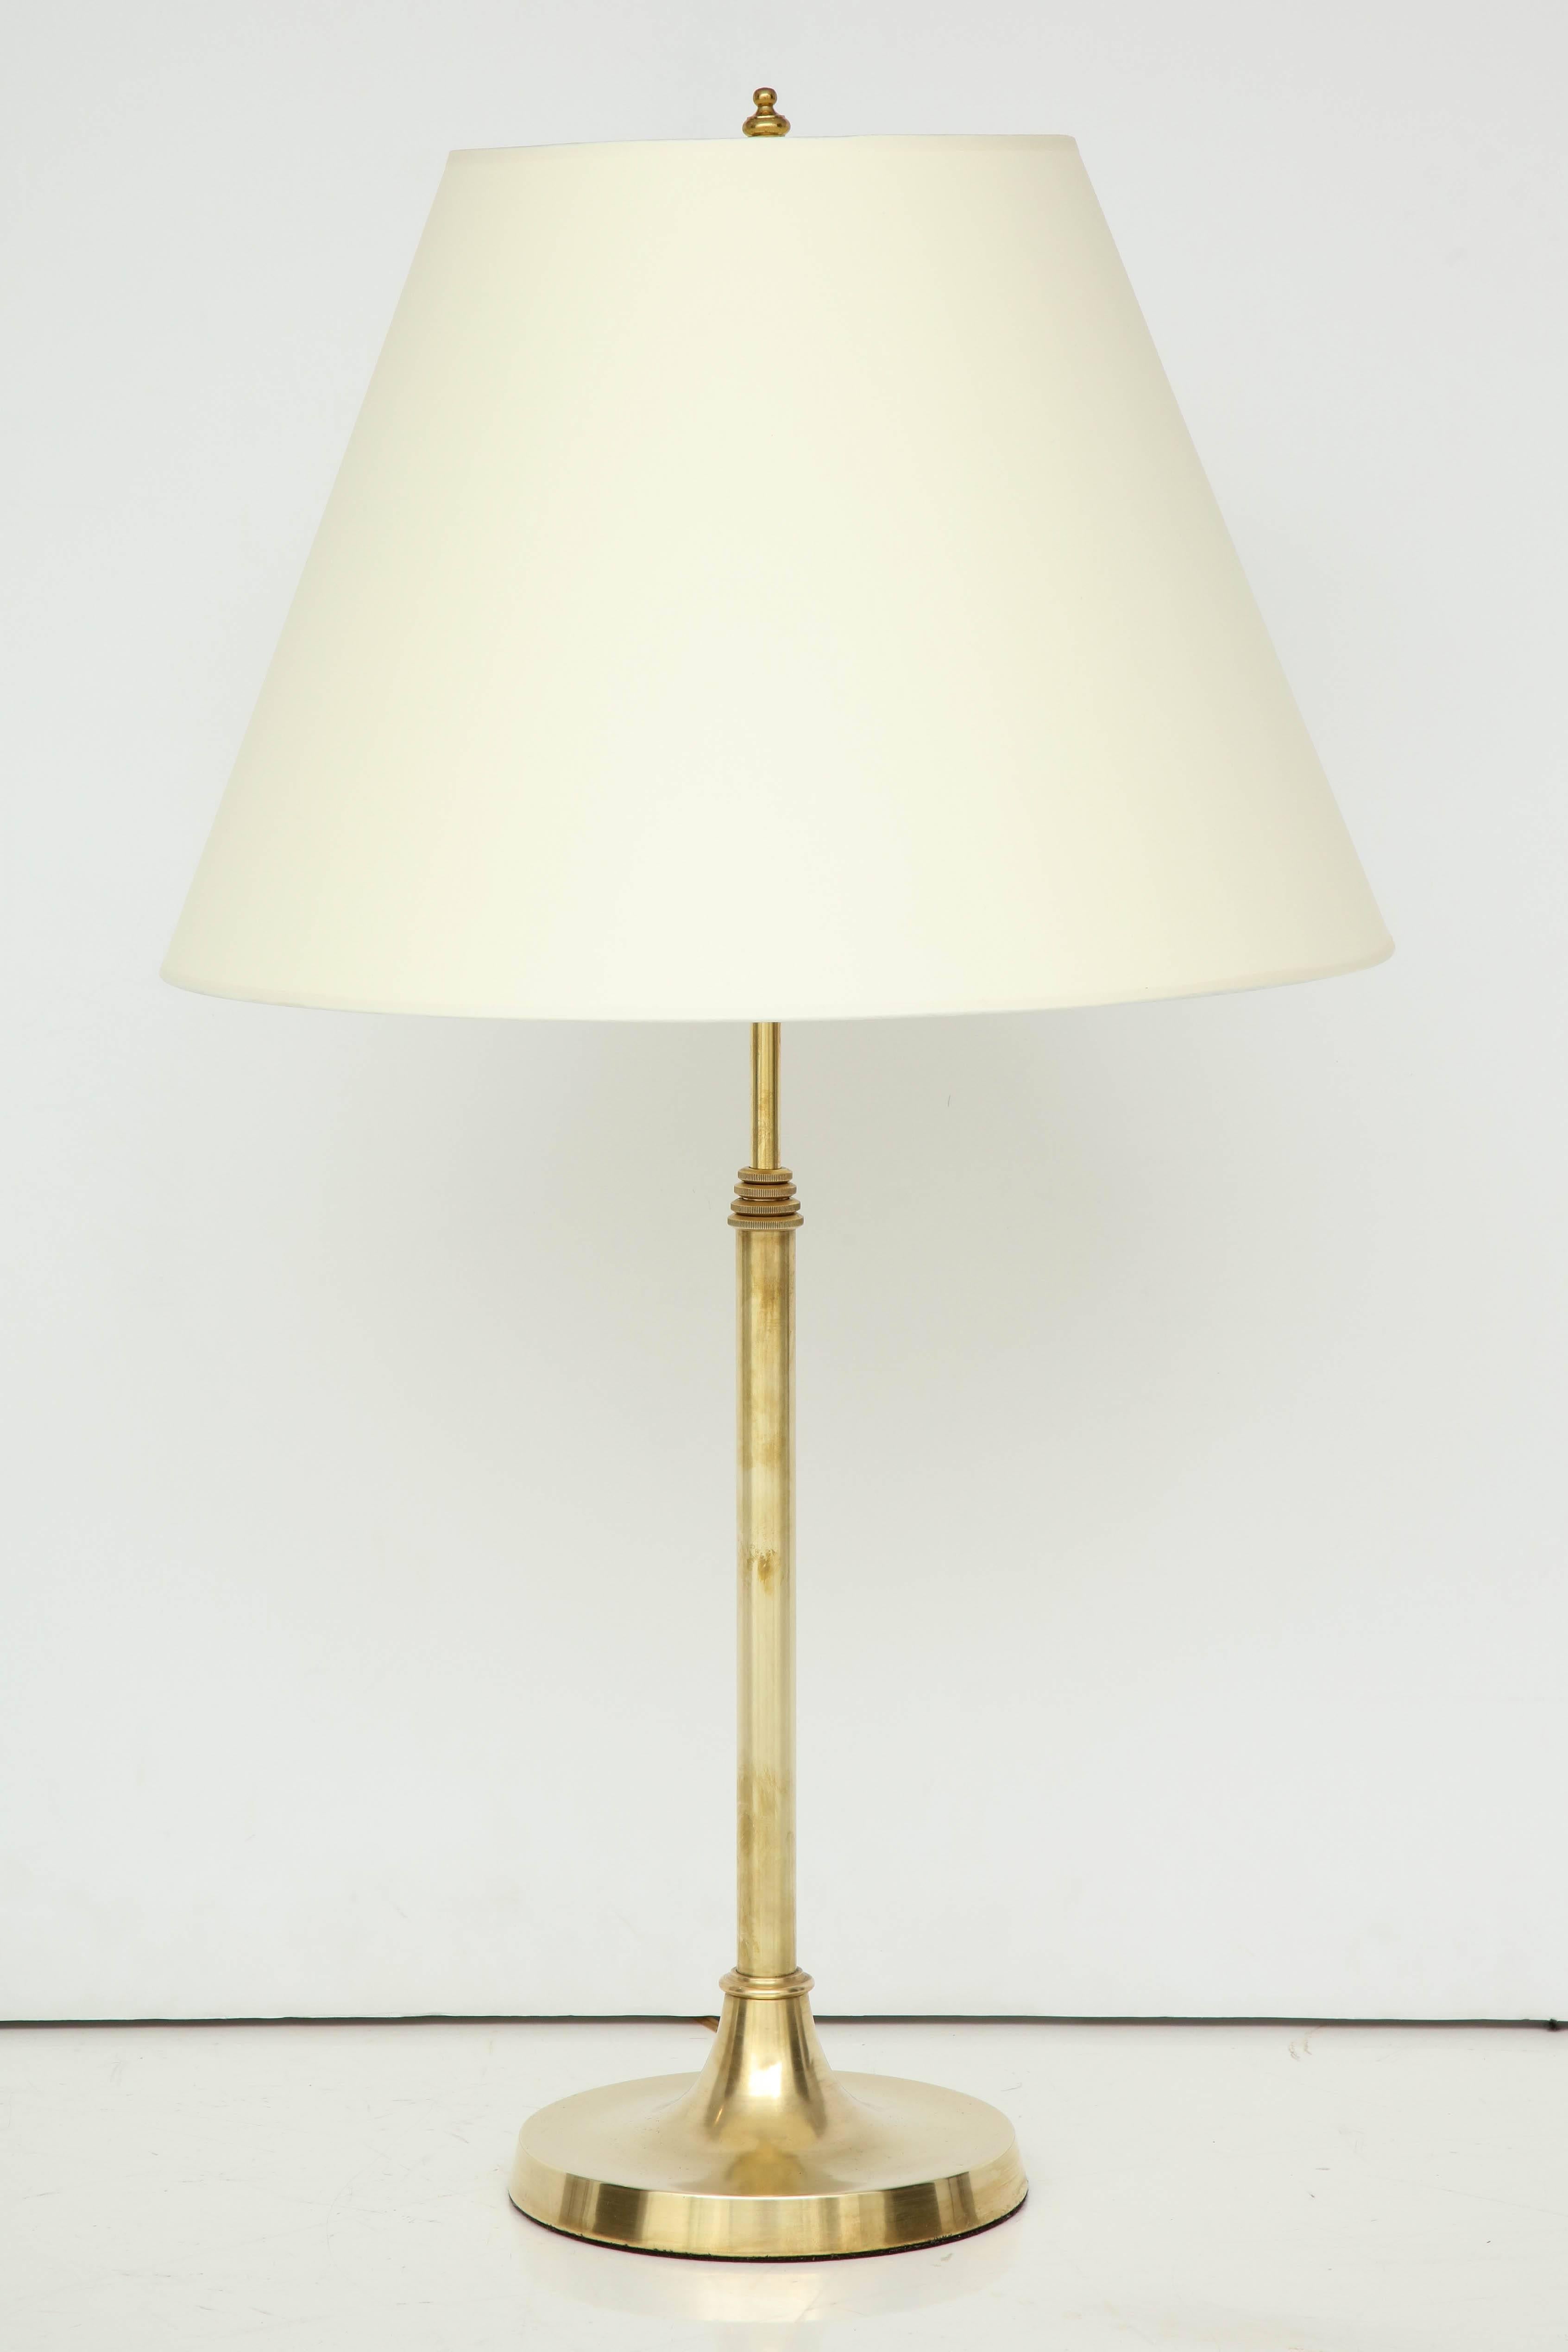 Une lampe télescopique danoise en laiton avec une tige sectionnelle effilée et une base circulaire, vers les années 1940. Probablement conçu par Aage Petersen (danois, 1902-1982)
Bonne finition en laiton, recâblé pour les États-Unis.